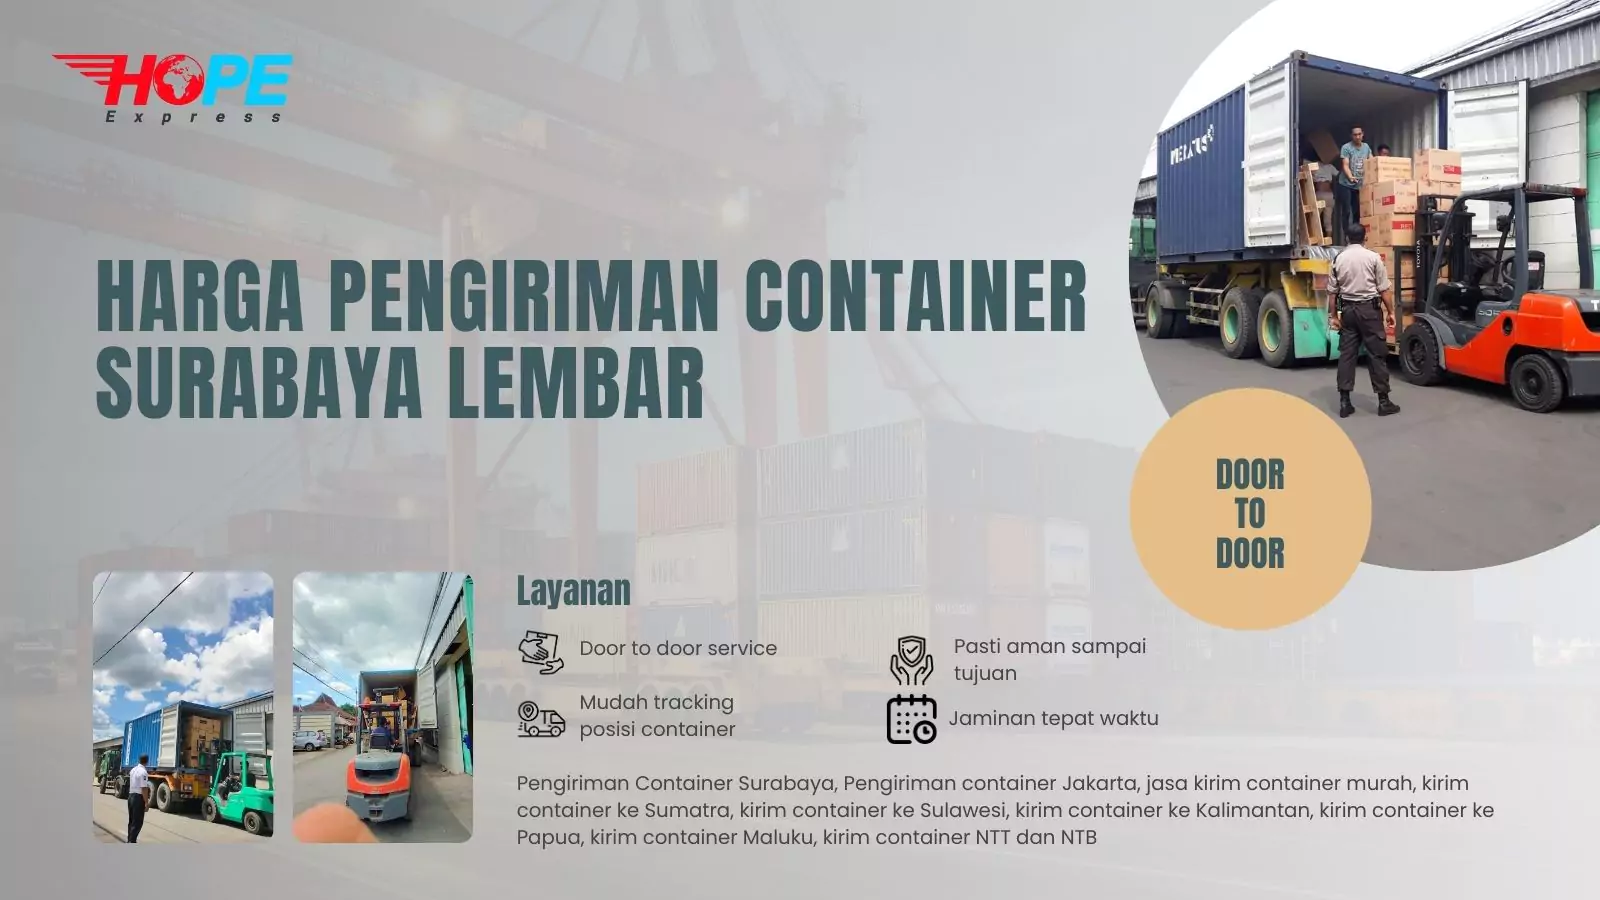 Harga Pengiriman Container Surabaya Lembar